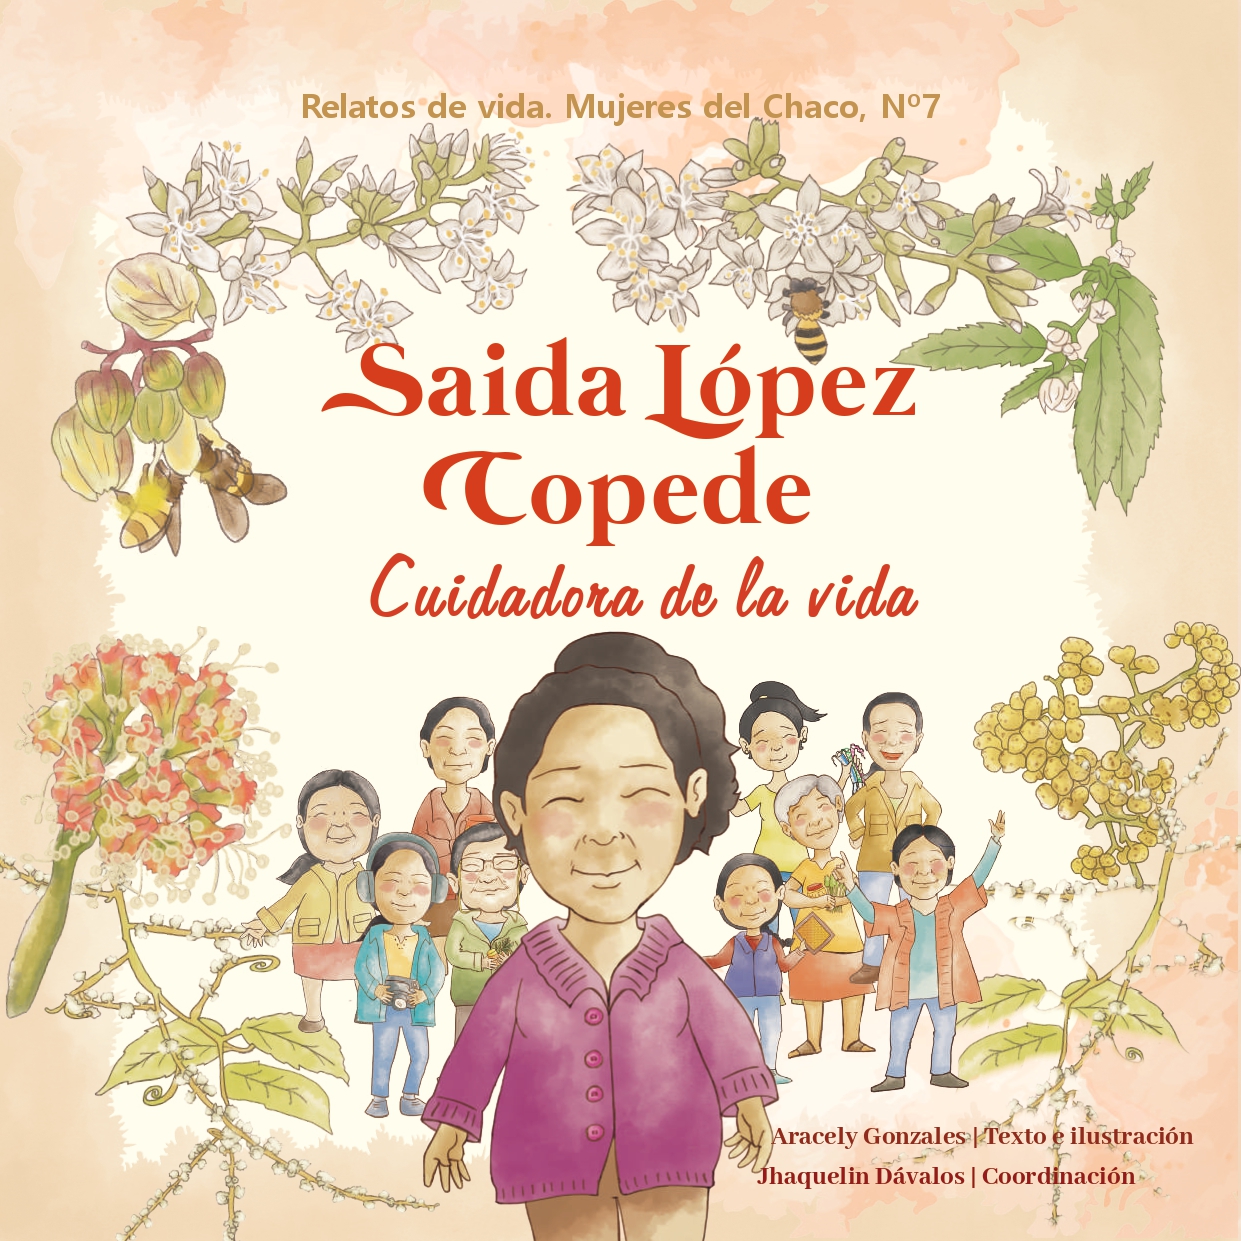 Saida López Copede, cuidadora de la vida